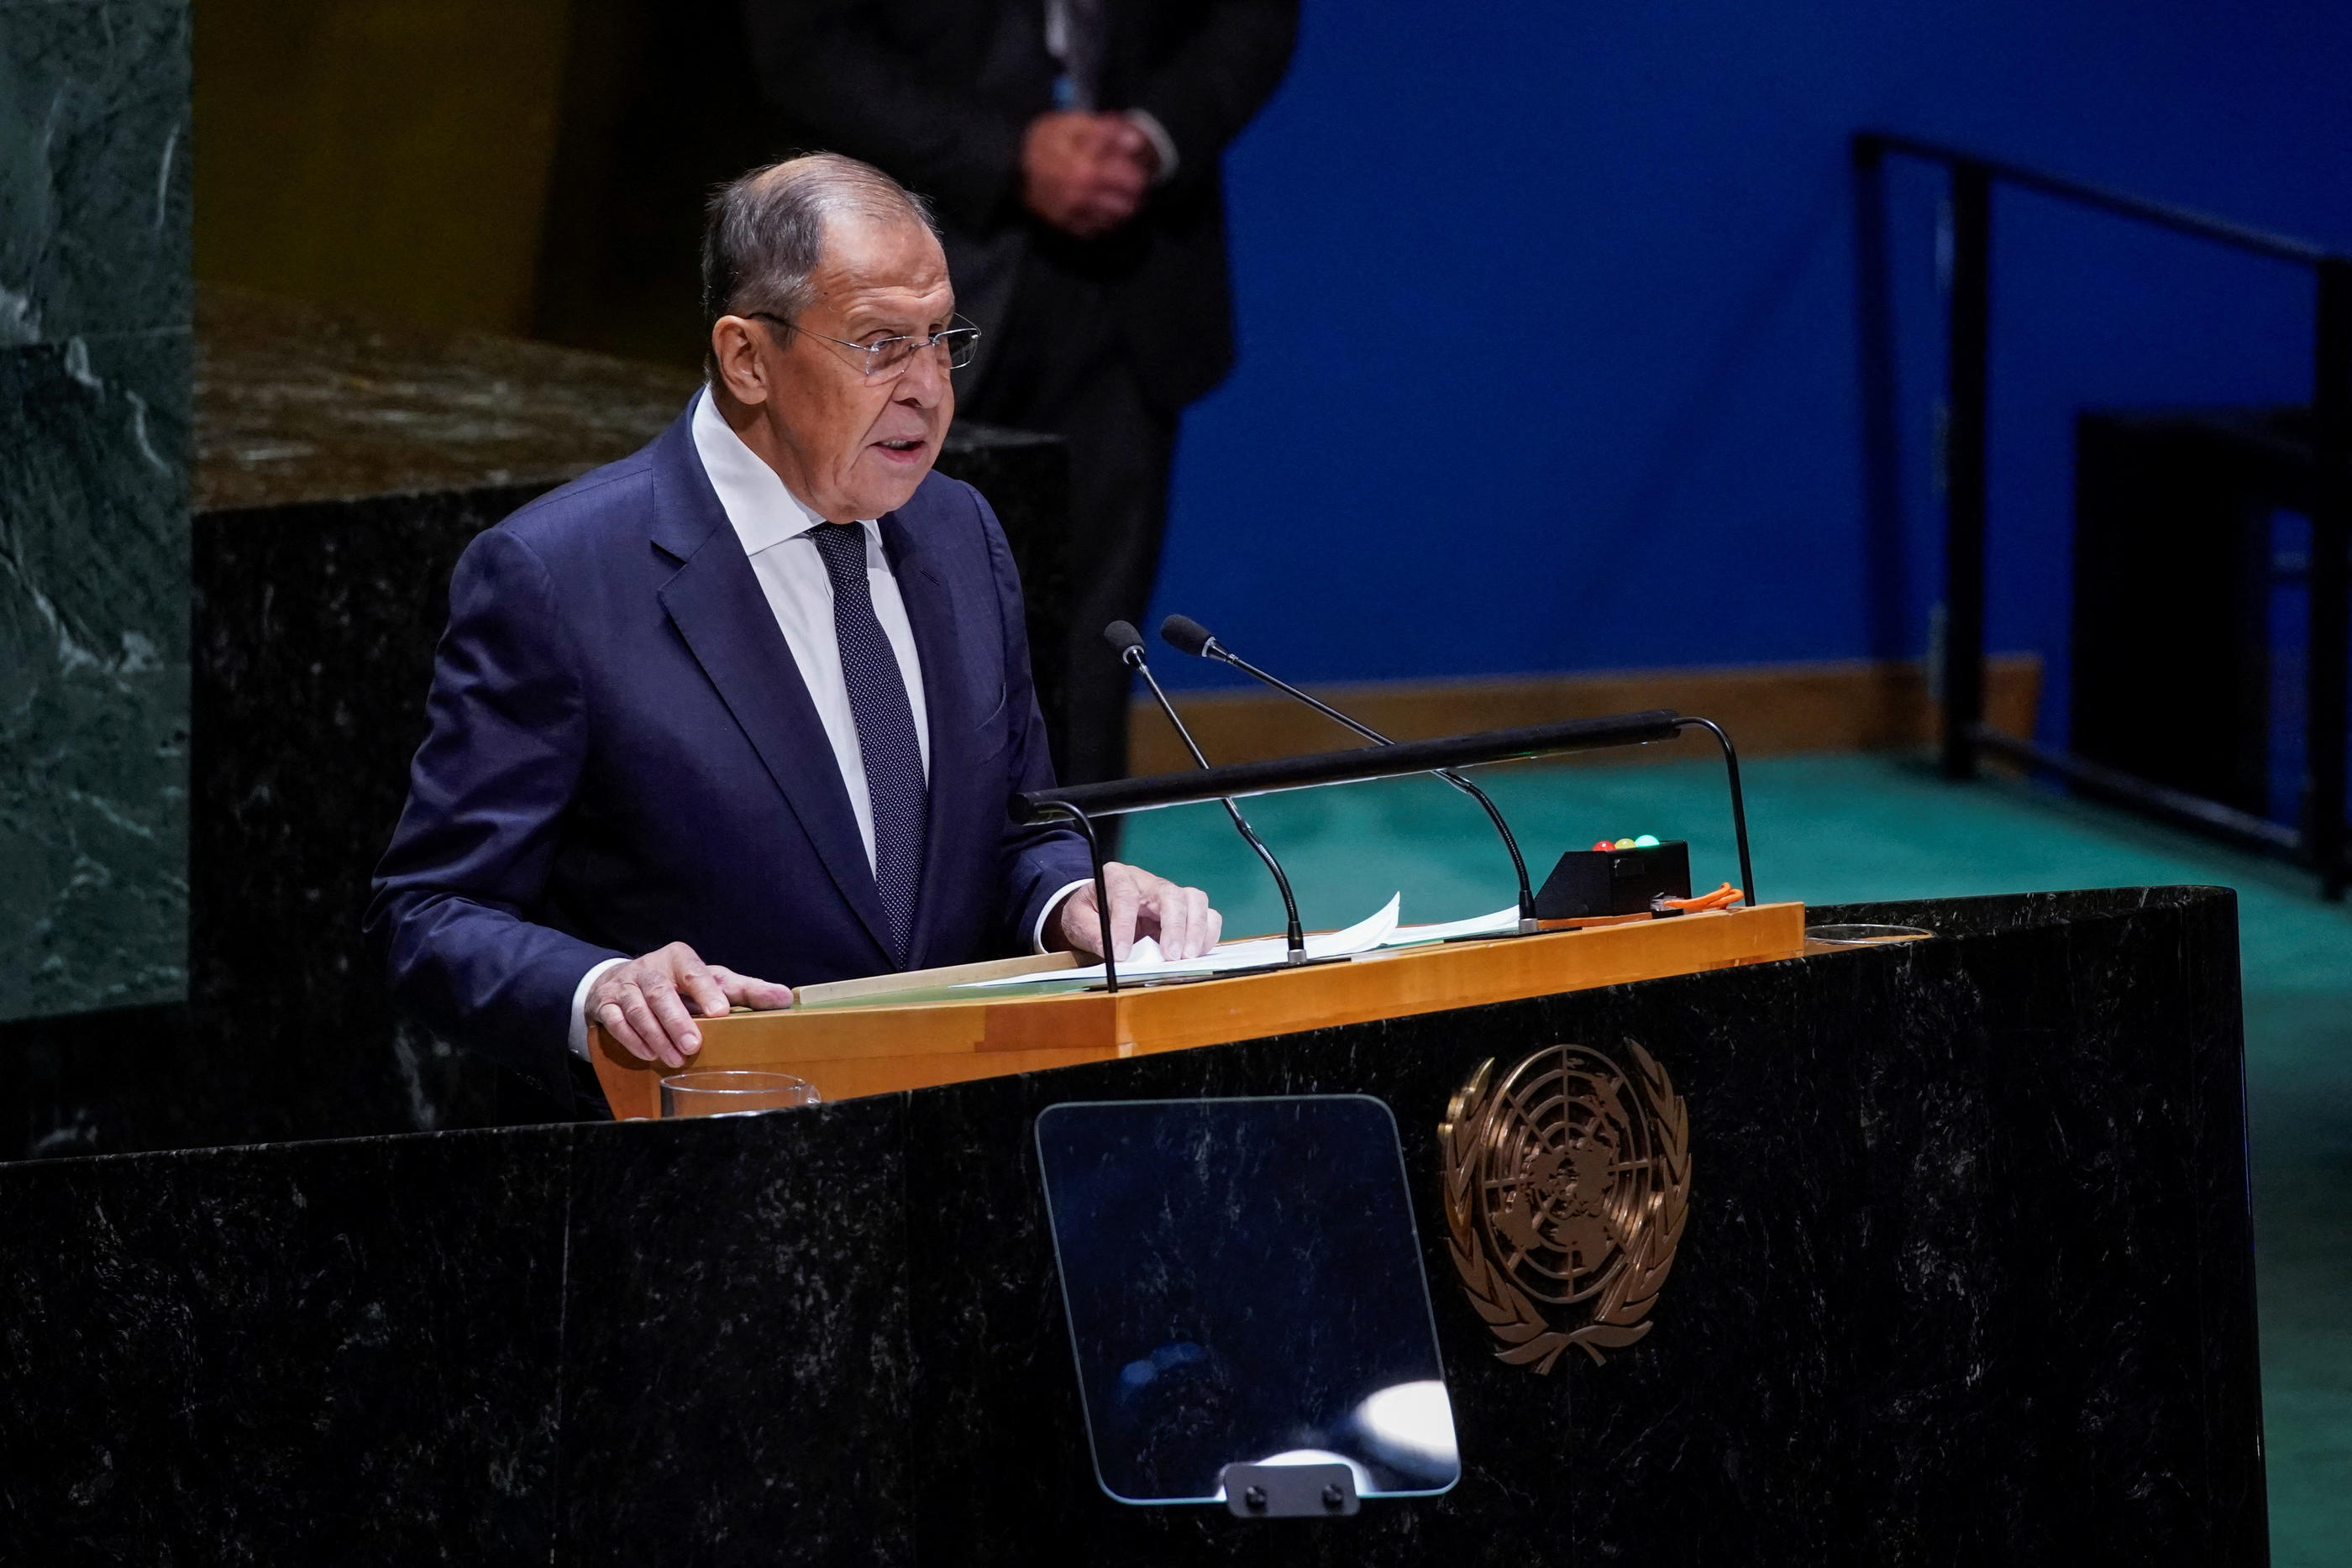 Le ministre des Affaires étrangères Sergueï Lavrov lors d'une assemblée générale des Nations Unies à New York. Reuters/Eduardo Munoz